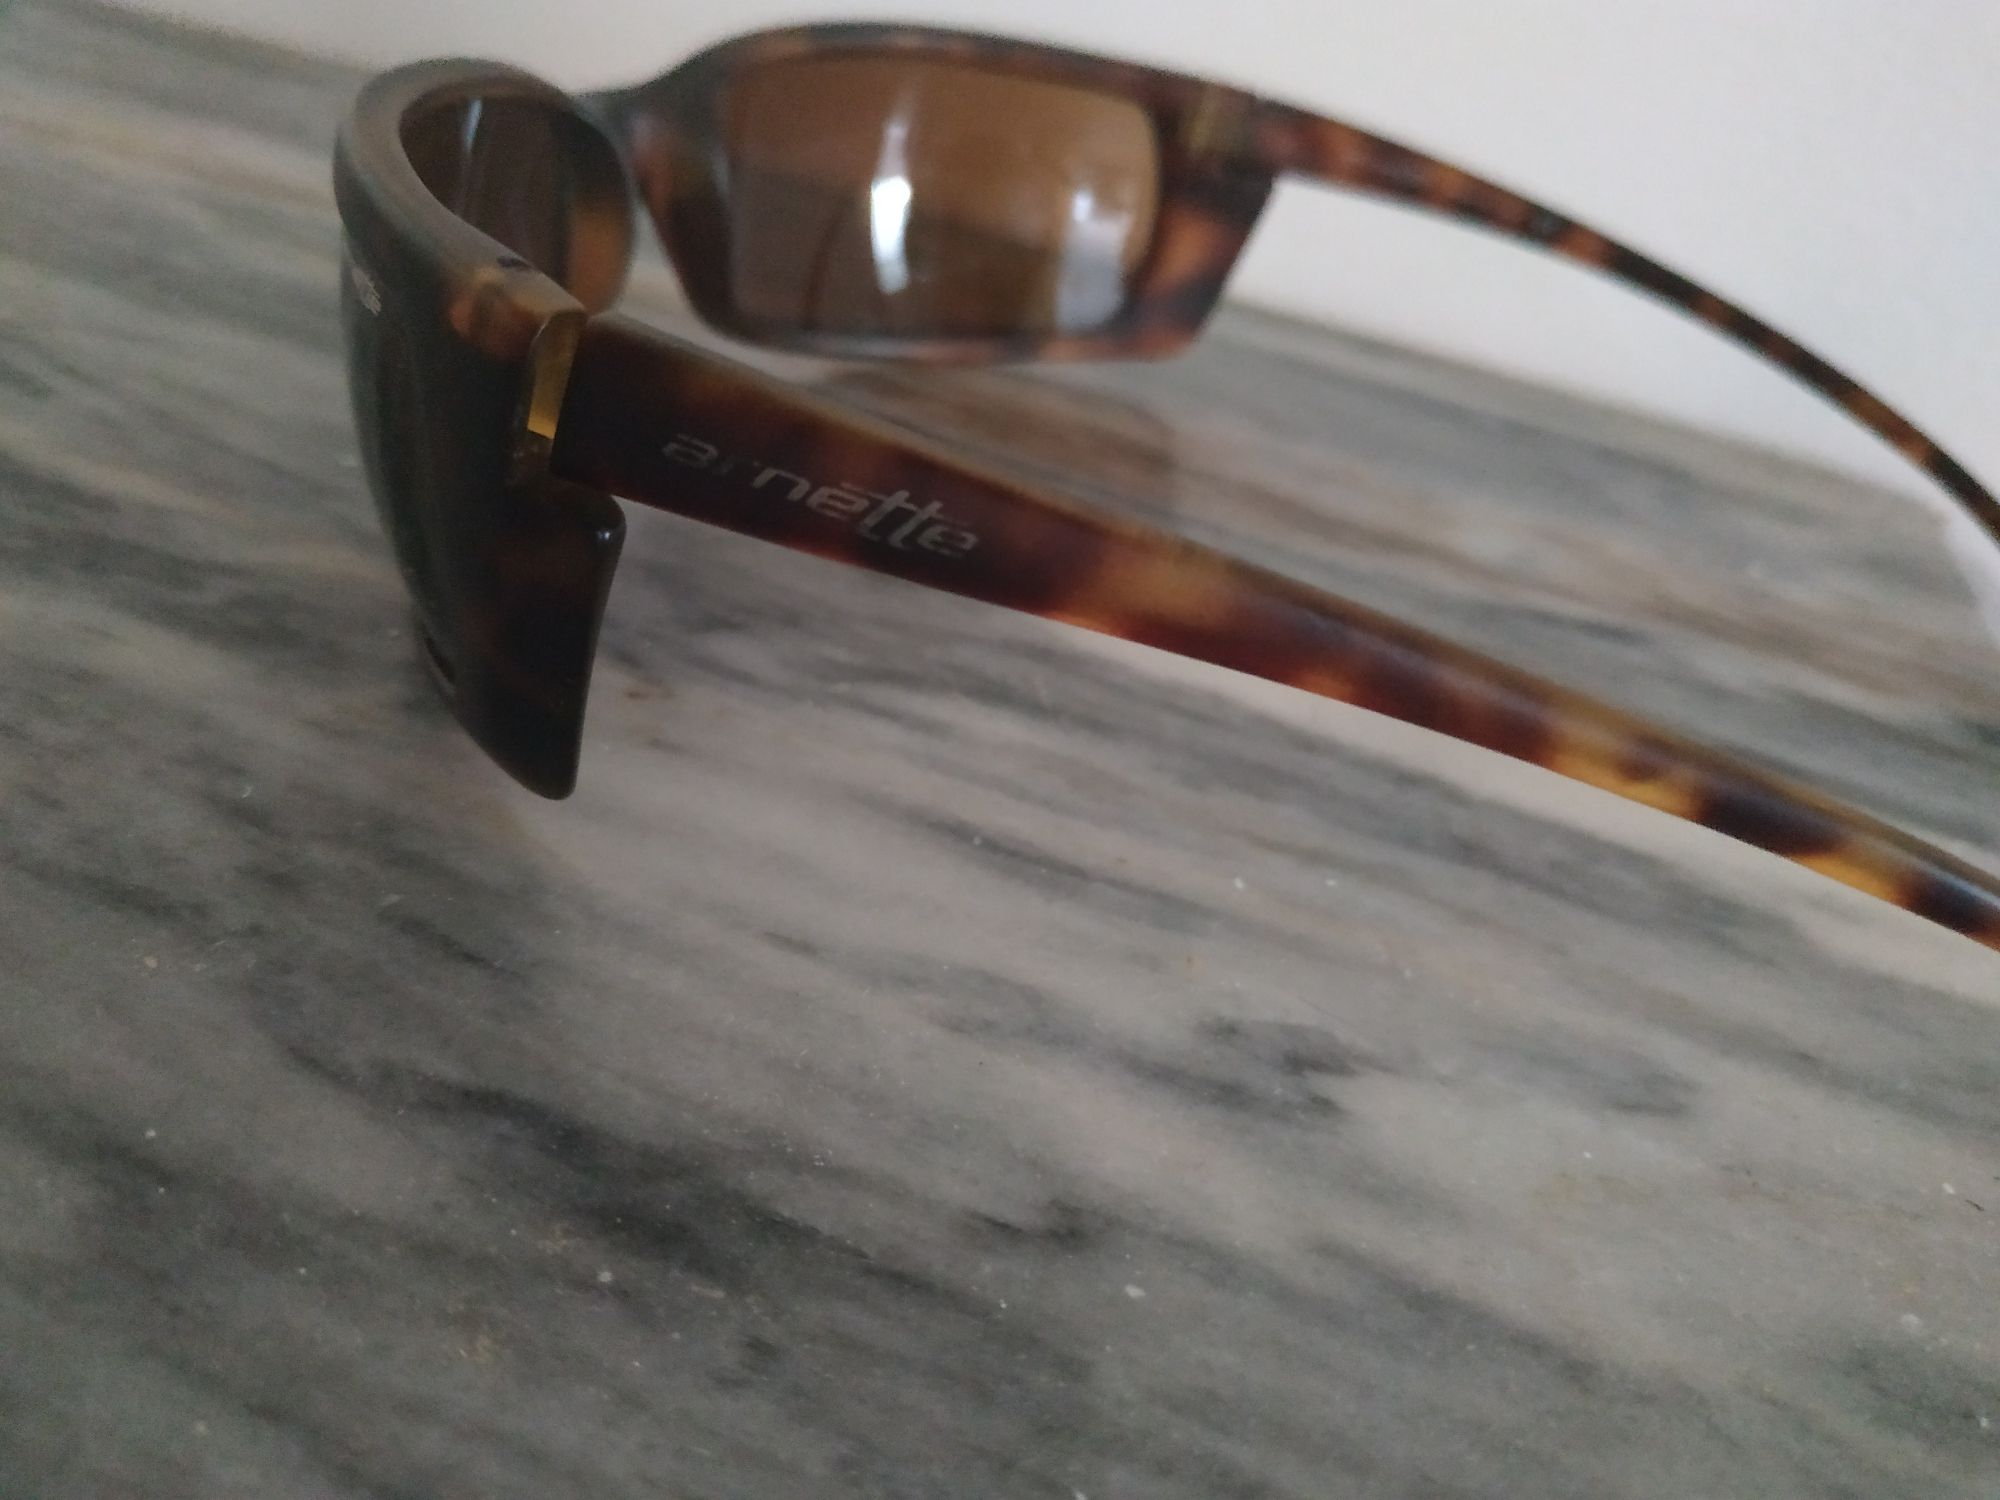 Óculos de sol Arnette